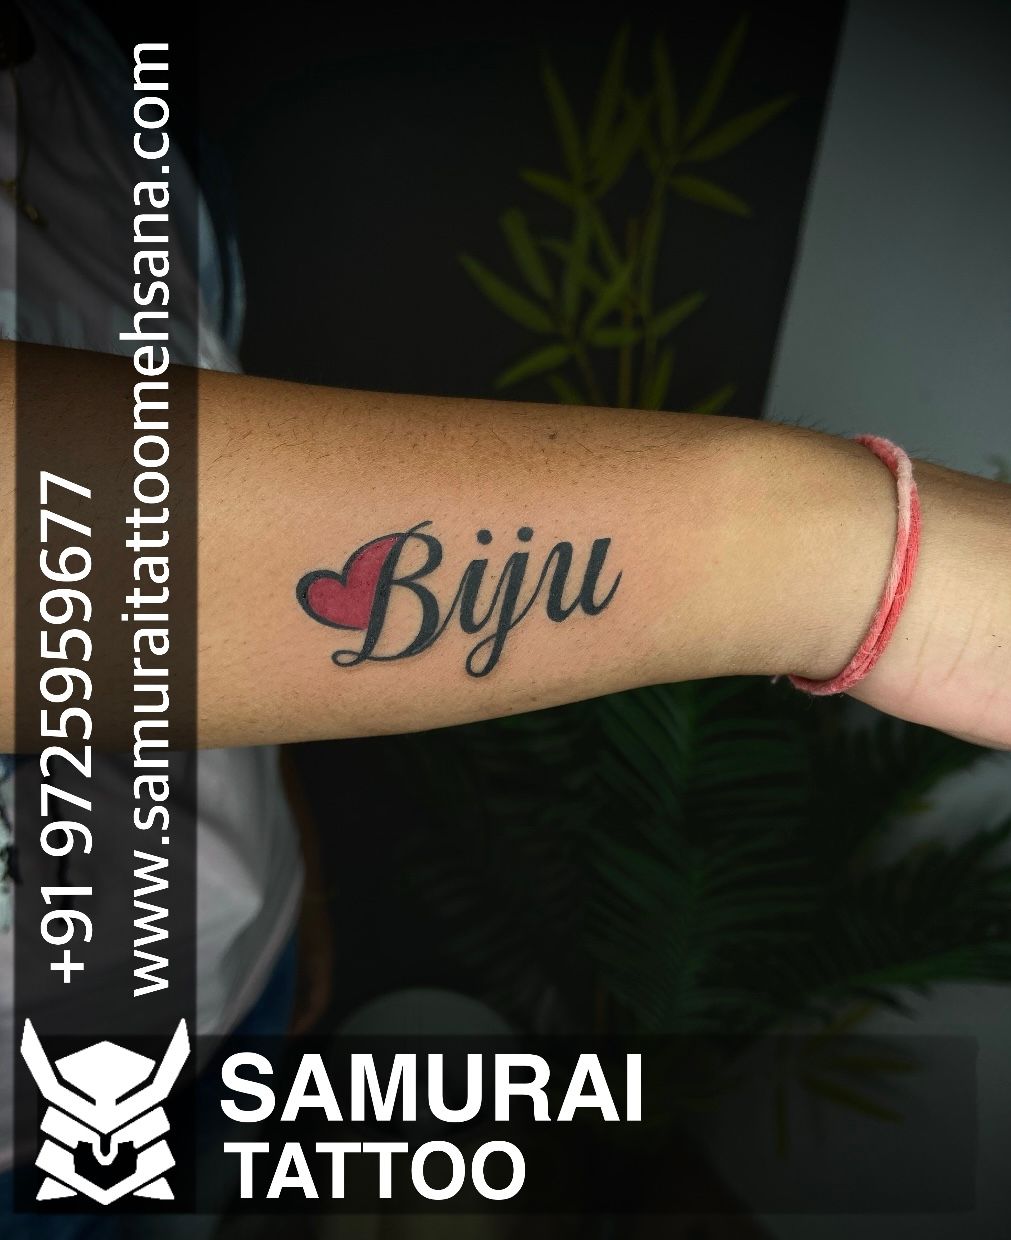 Tattoo uploaded by Vipul Chaudhary • Biju name tattoo | Biju name ...